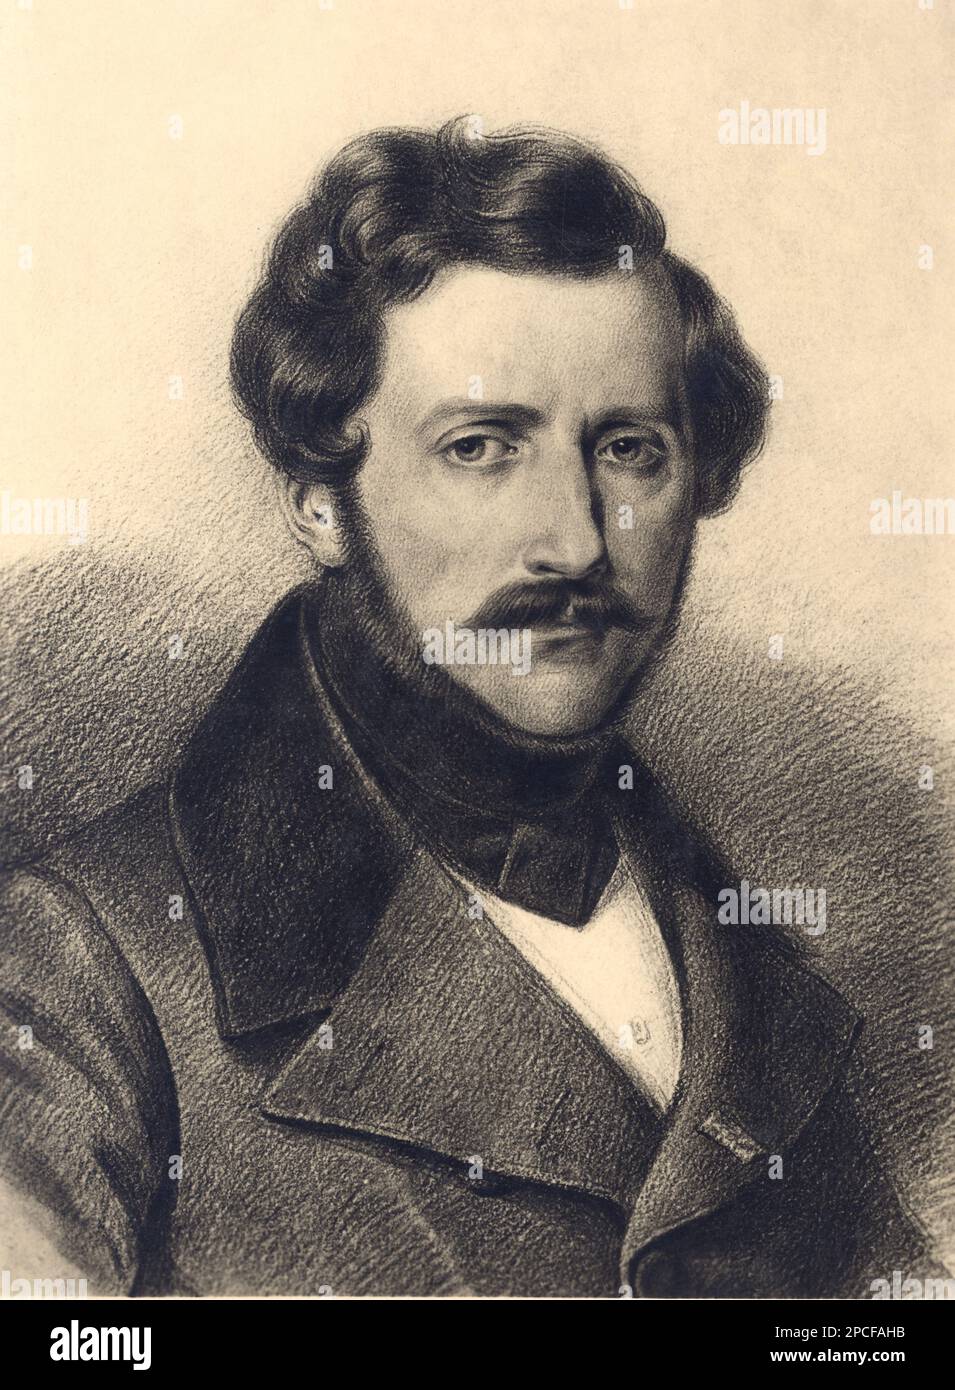 Il celebre compositore d'opera GAETANO DONIZETTI ( Bergamo 1797 - 1848 ) - COMPOSITORE - OPERA LIRICA - CLASSICA - CLASSICA - RITRATTO - ritmo - MUSICA - MUSICA - BARBA - BARBA - BARBA - MUSTACHE - BAFFI --- ARCHIVIO GBB Foto Stock